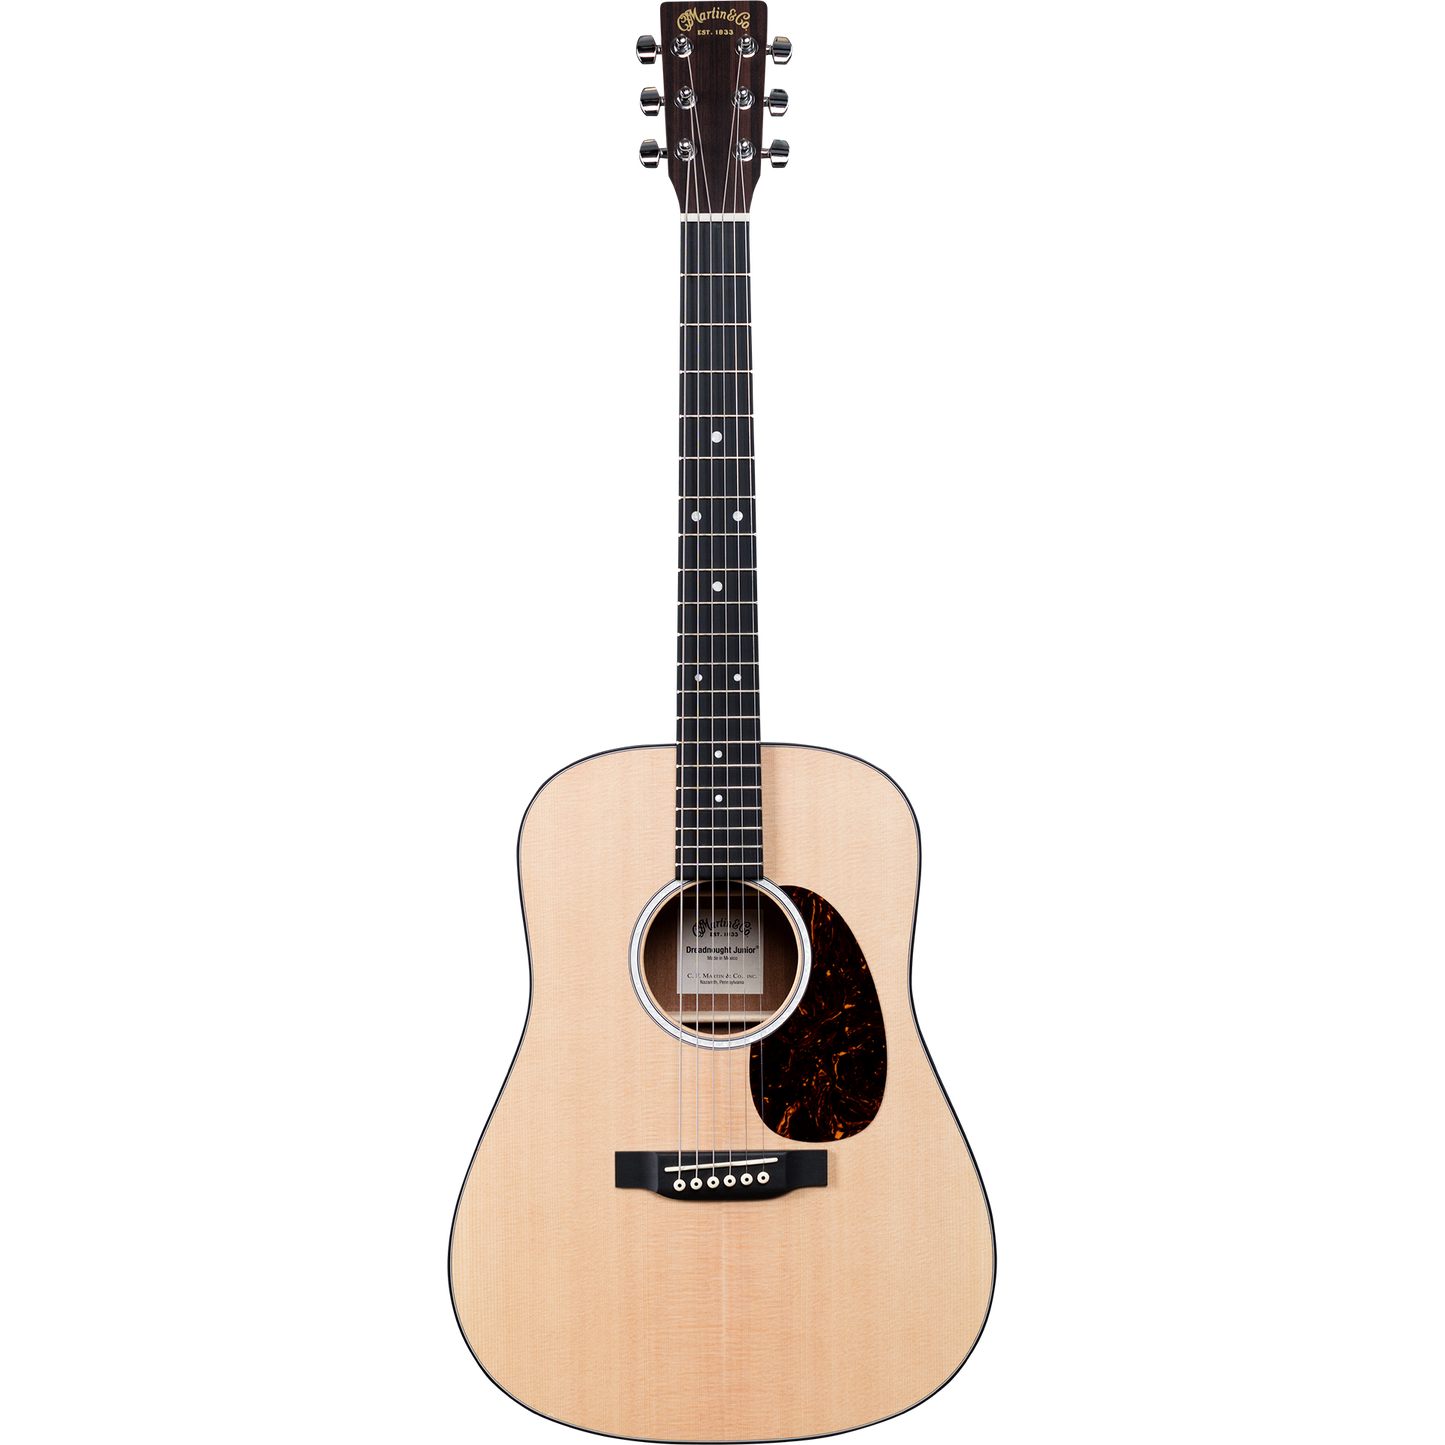 Martin DJR-10 Junior Series Acoustic Guitar